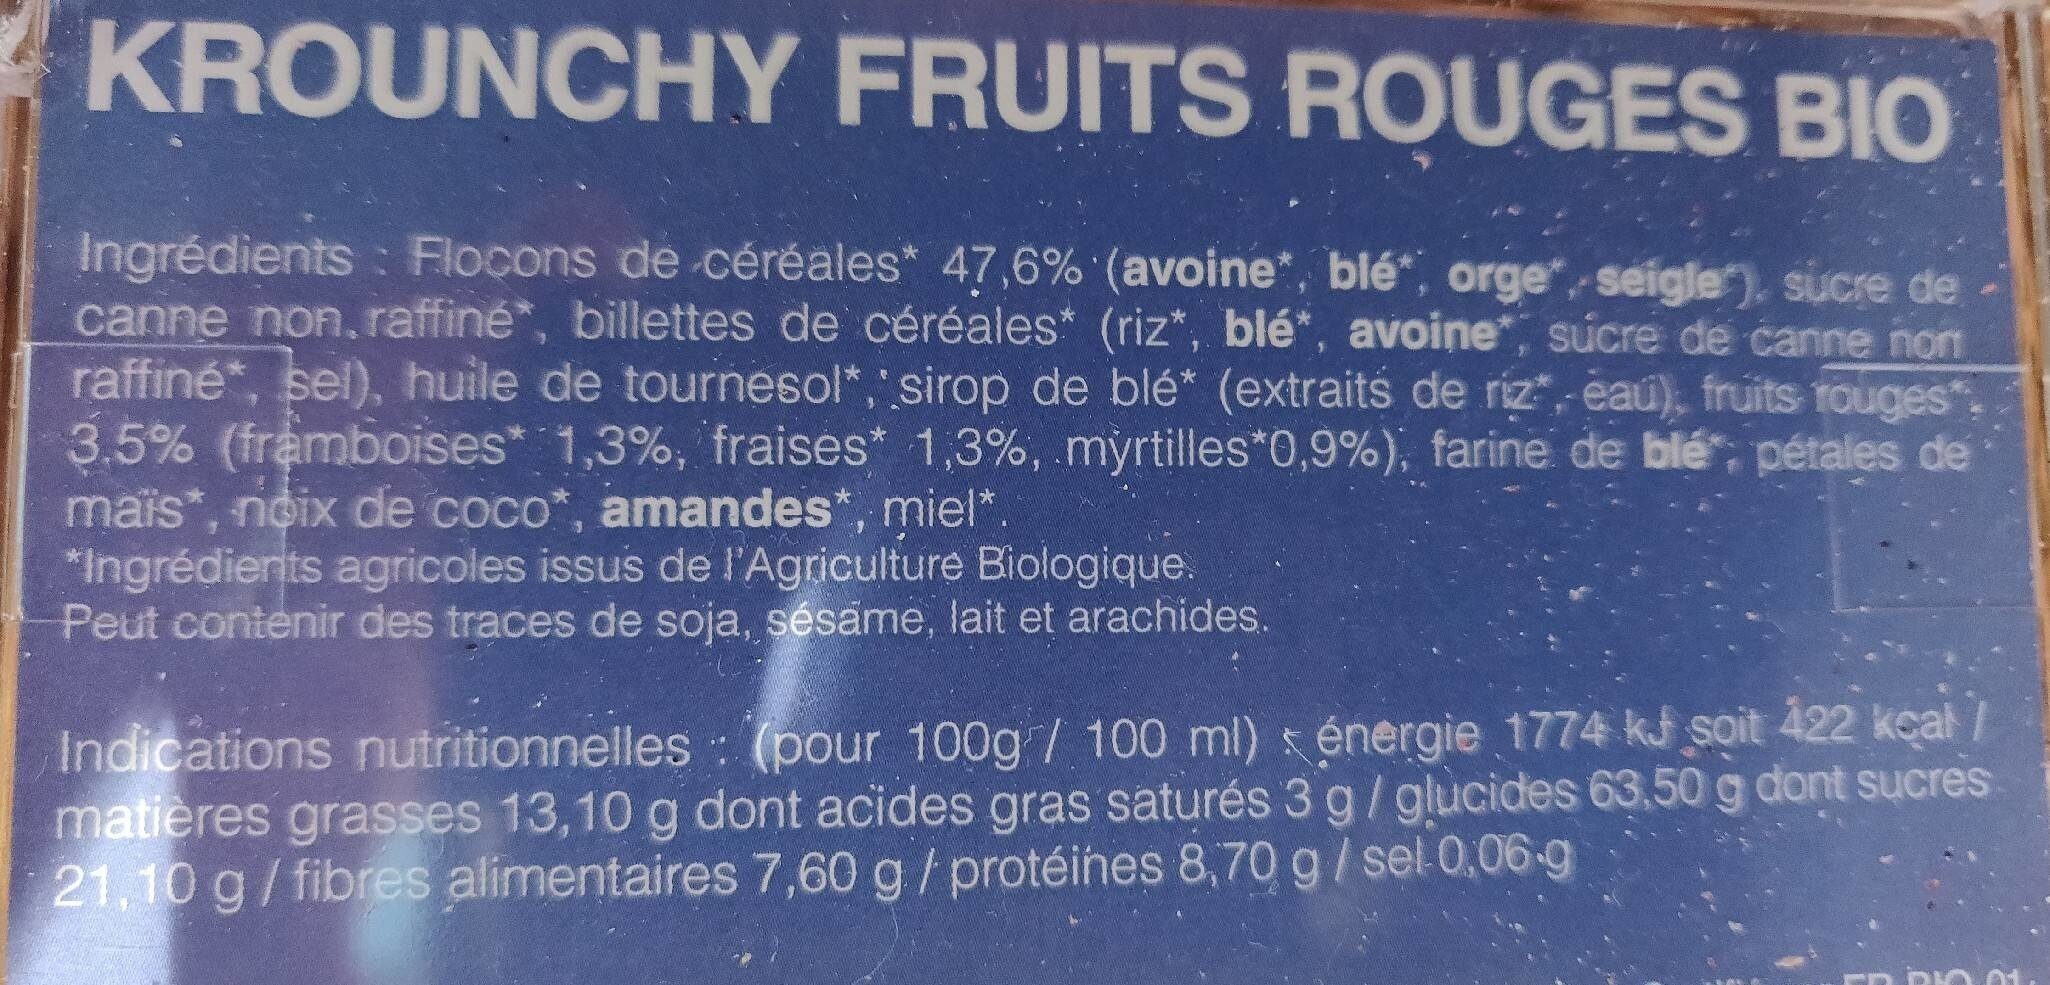 Krounchy fruits rouges - Valori nutrizionali - fr